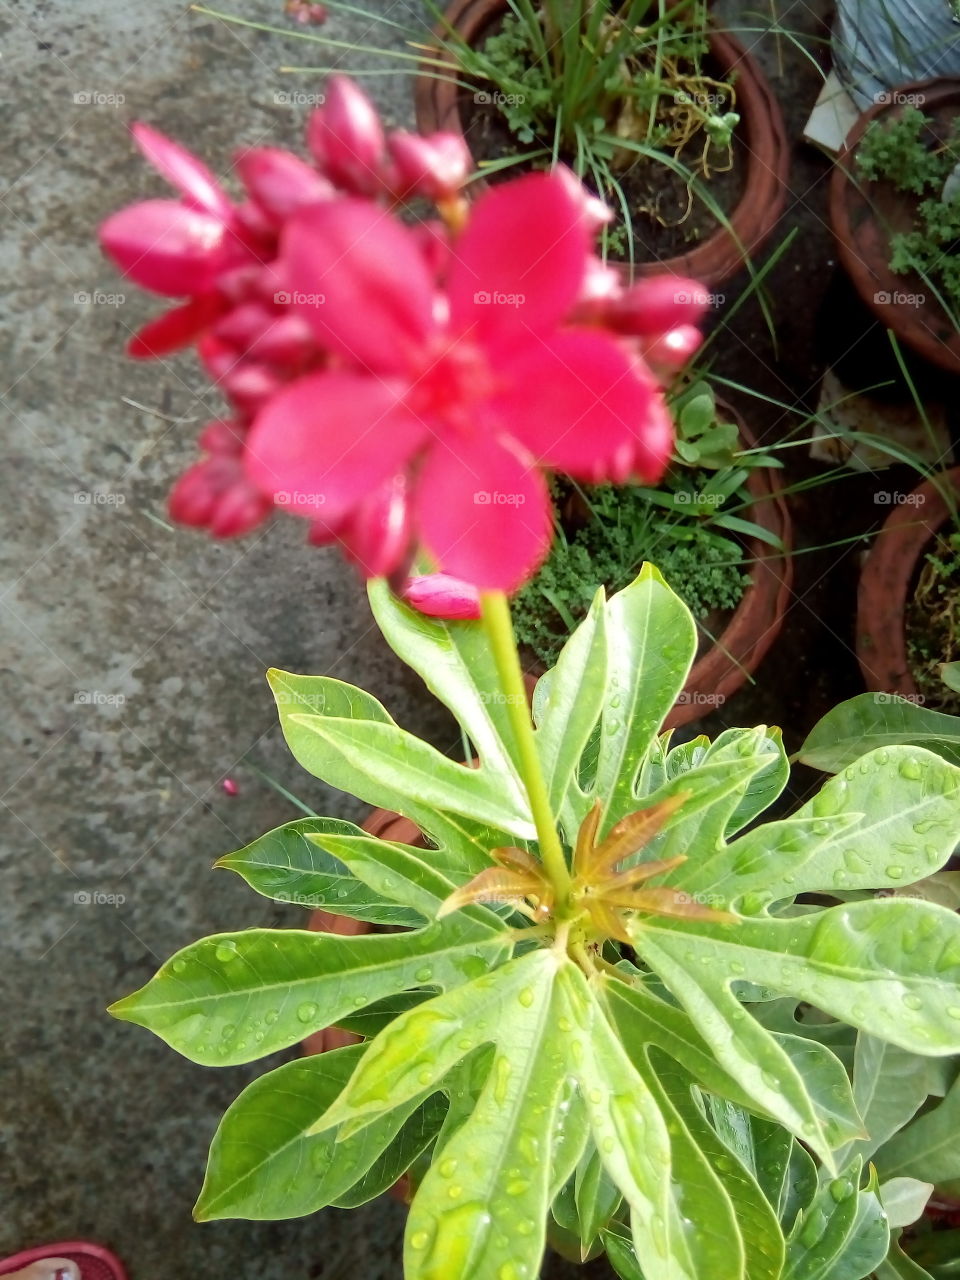 raindrops on flowers